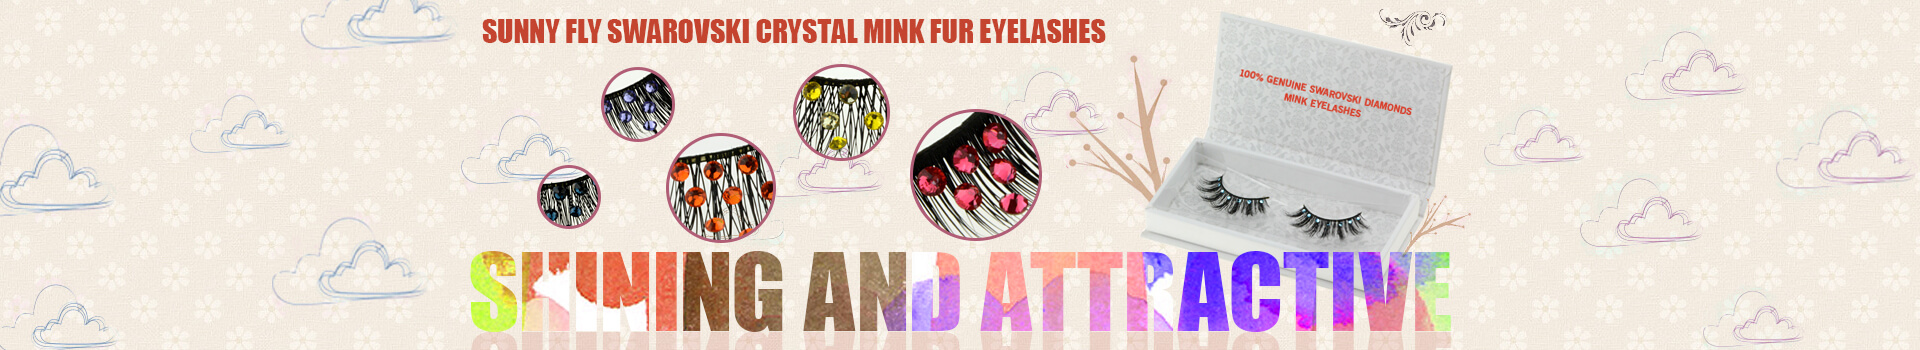 Swarovski Crystal Mink Fur Eyelashes MS06